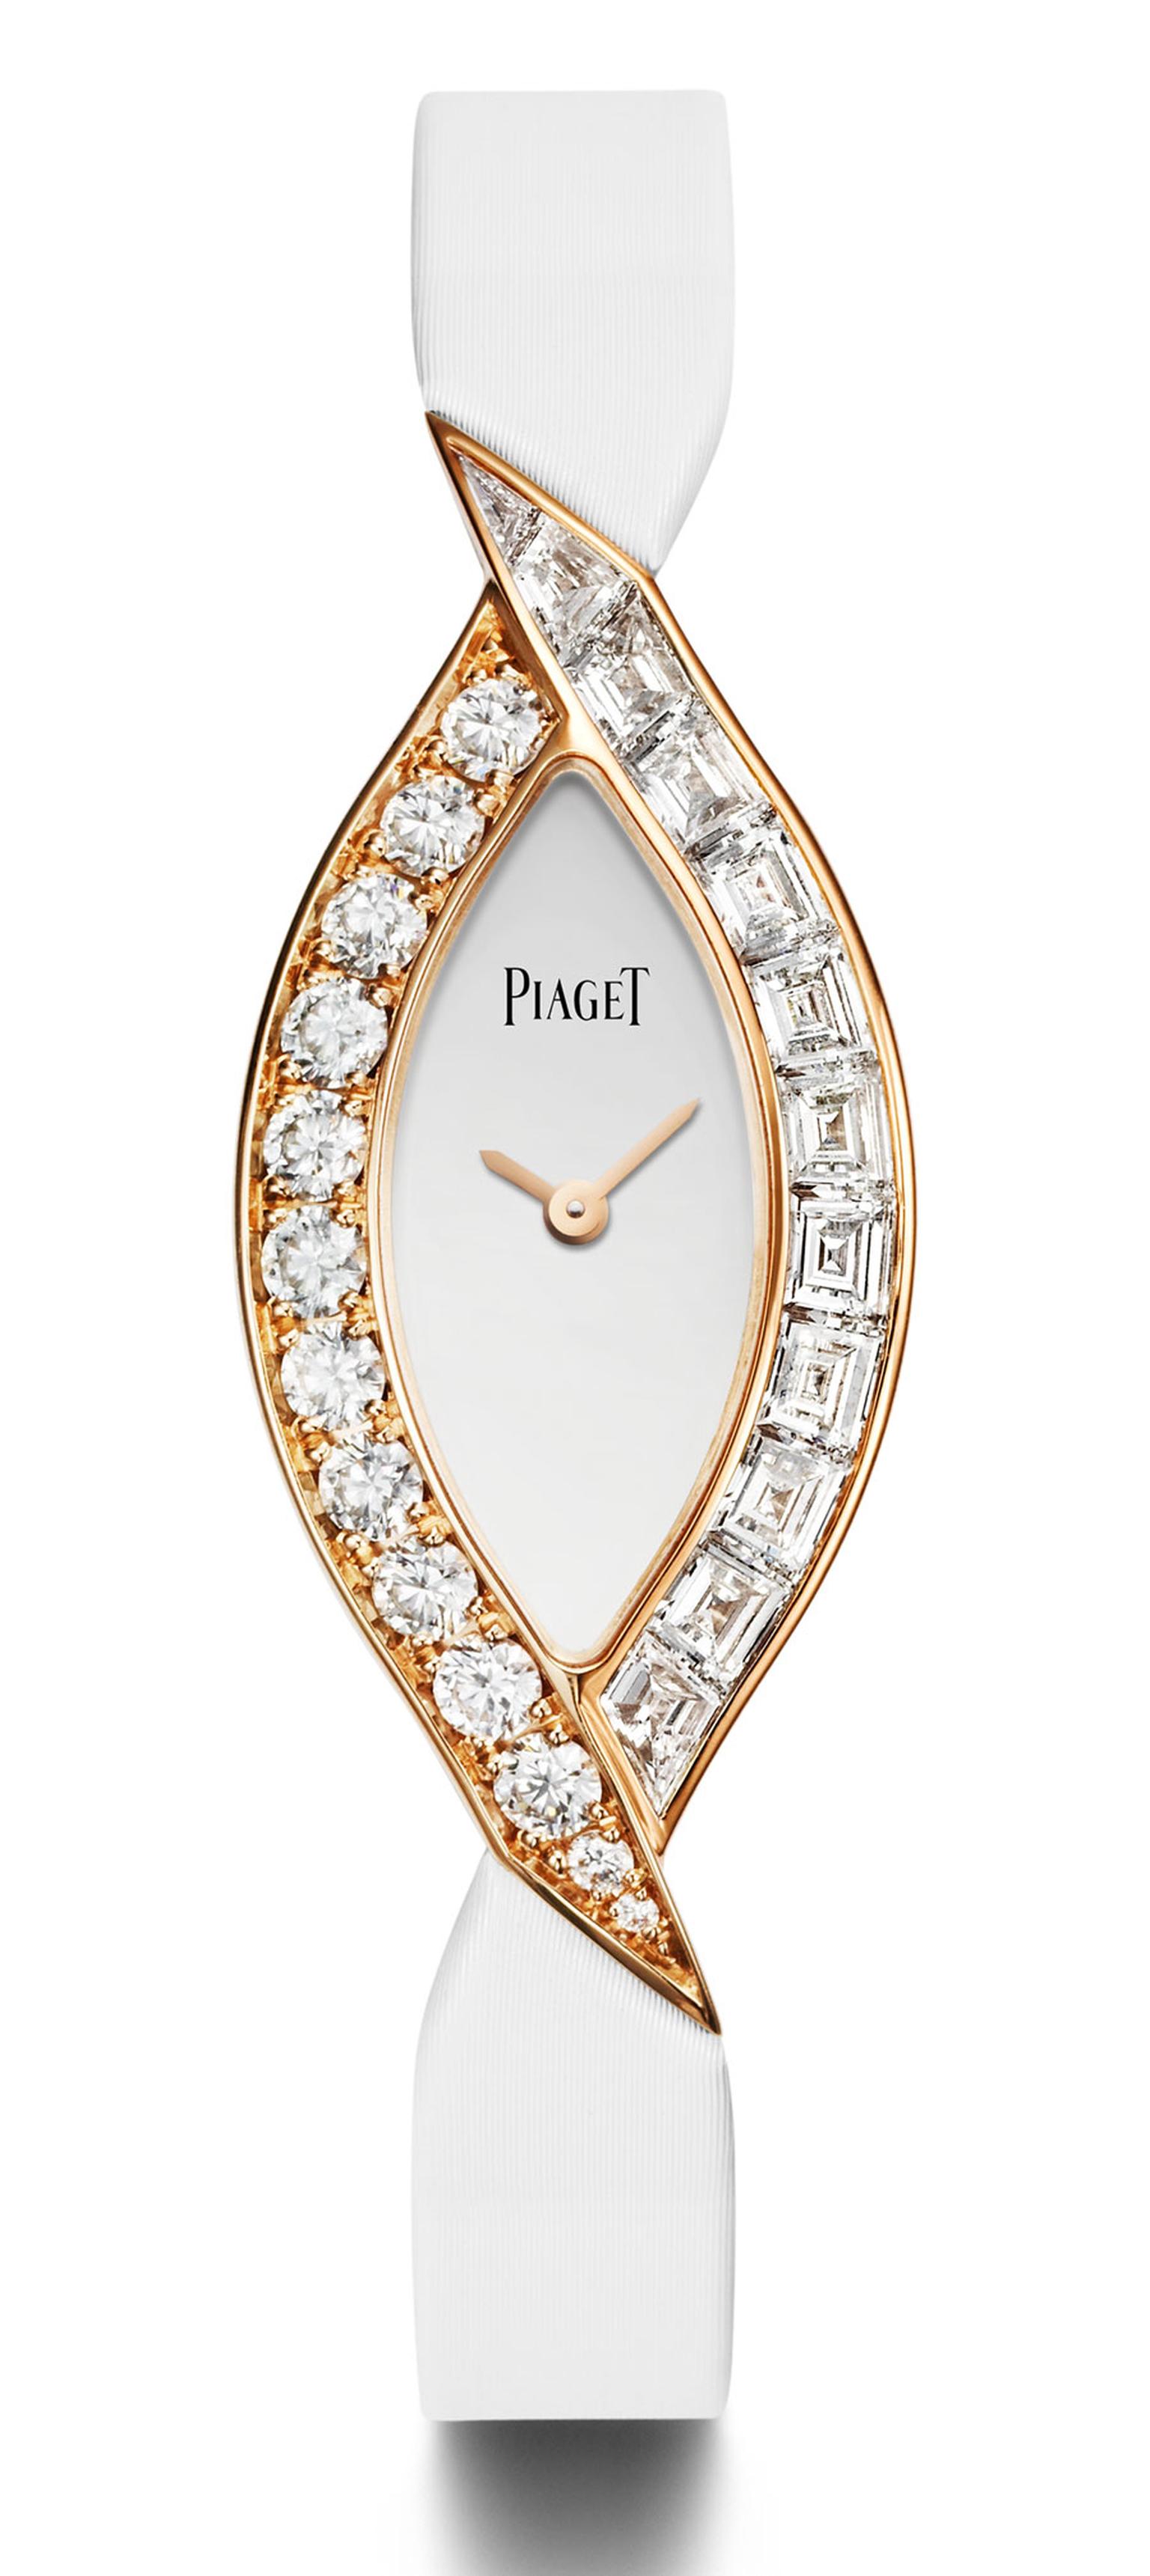 Piaget-Couture-Precieuse4.jpg